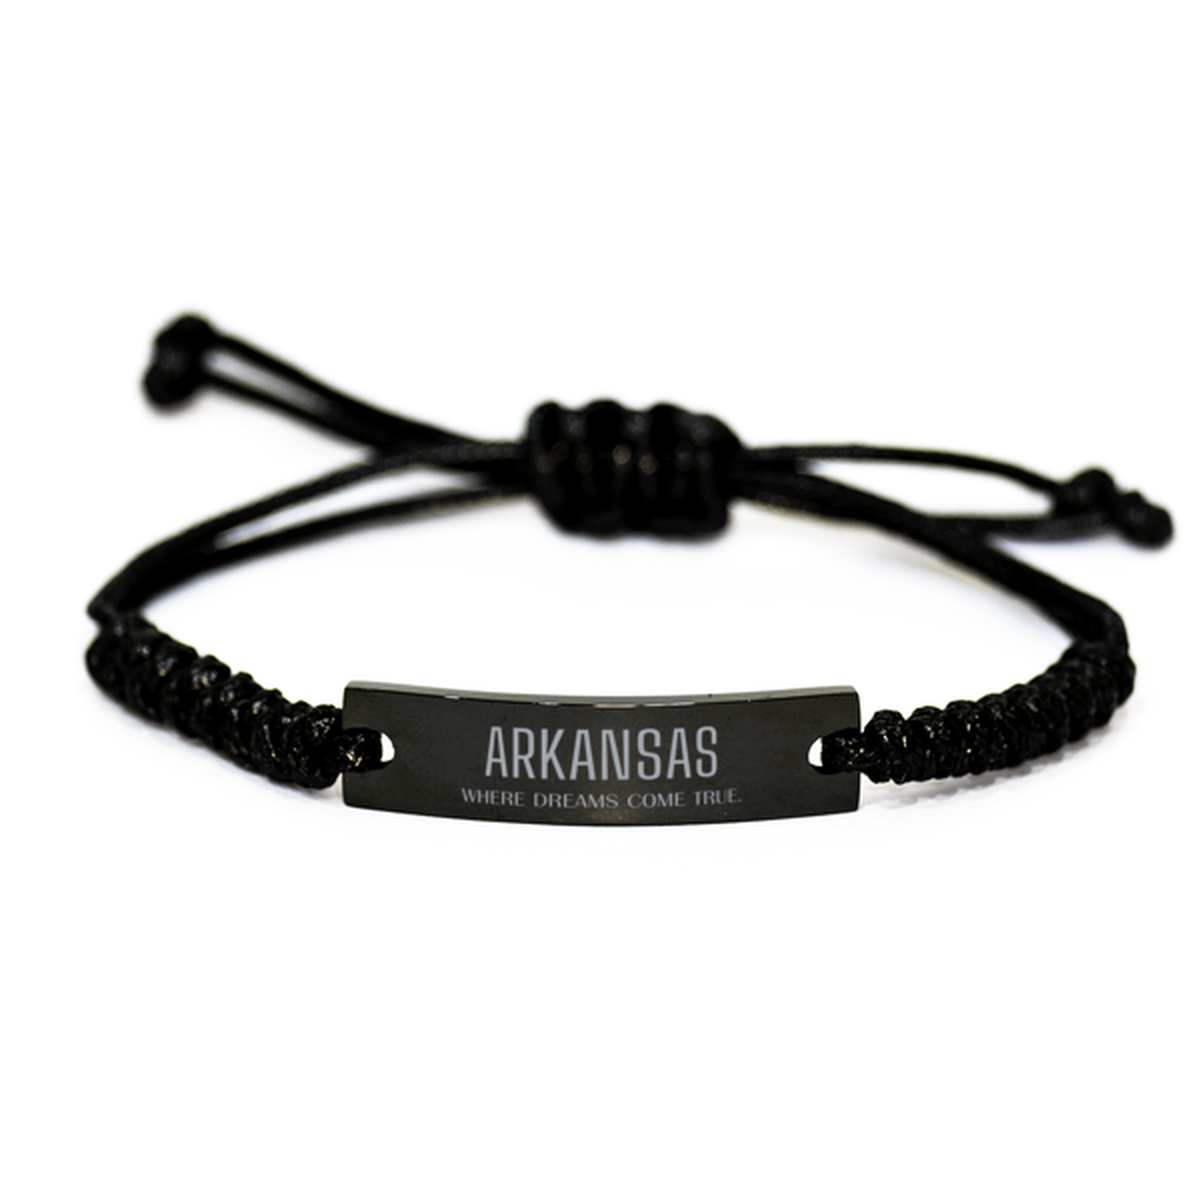 Love Arkansas State Black Rope Bracelet, Arkansas Where dreams come true, Birthday Inspirational Gifts For Arkansas Men, Women, Friends